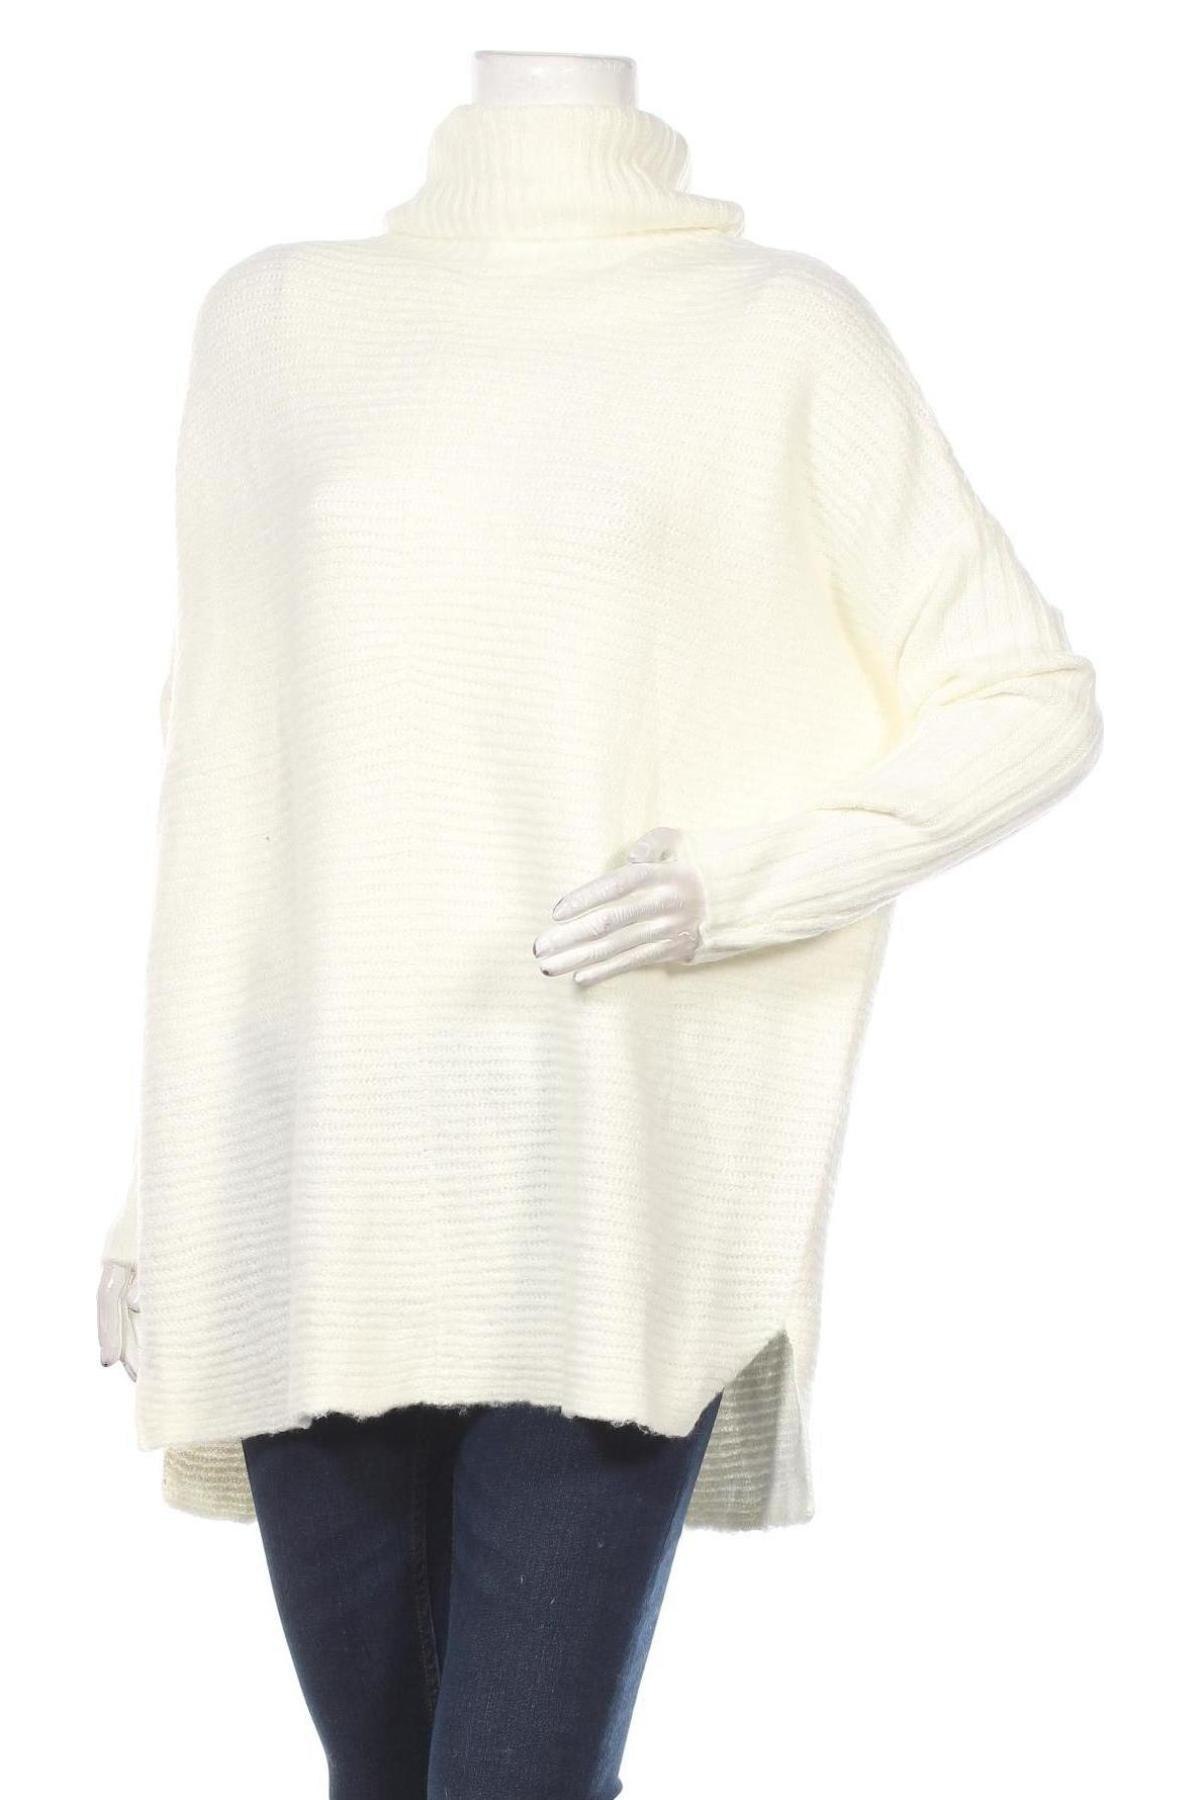 Damski sweter Miss Selfridge, Rozmiar L, Kolor ecru, 68%akryl, 30% poliester, 2% elastyna, Cena 142,50 zł